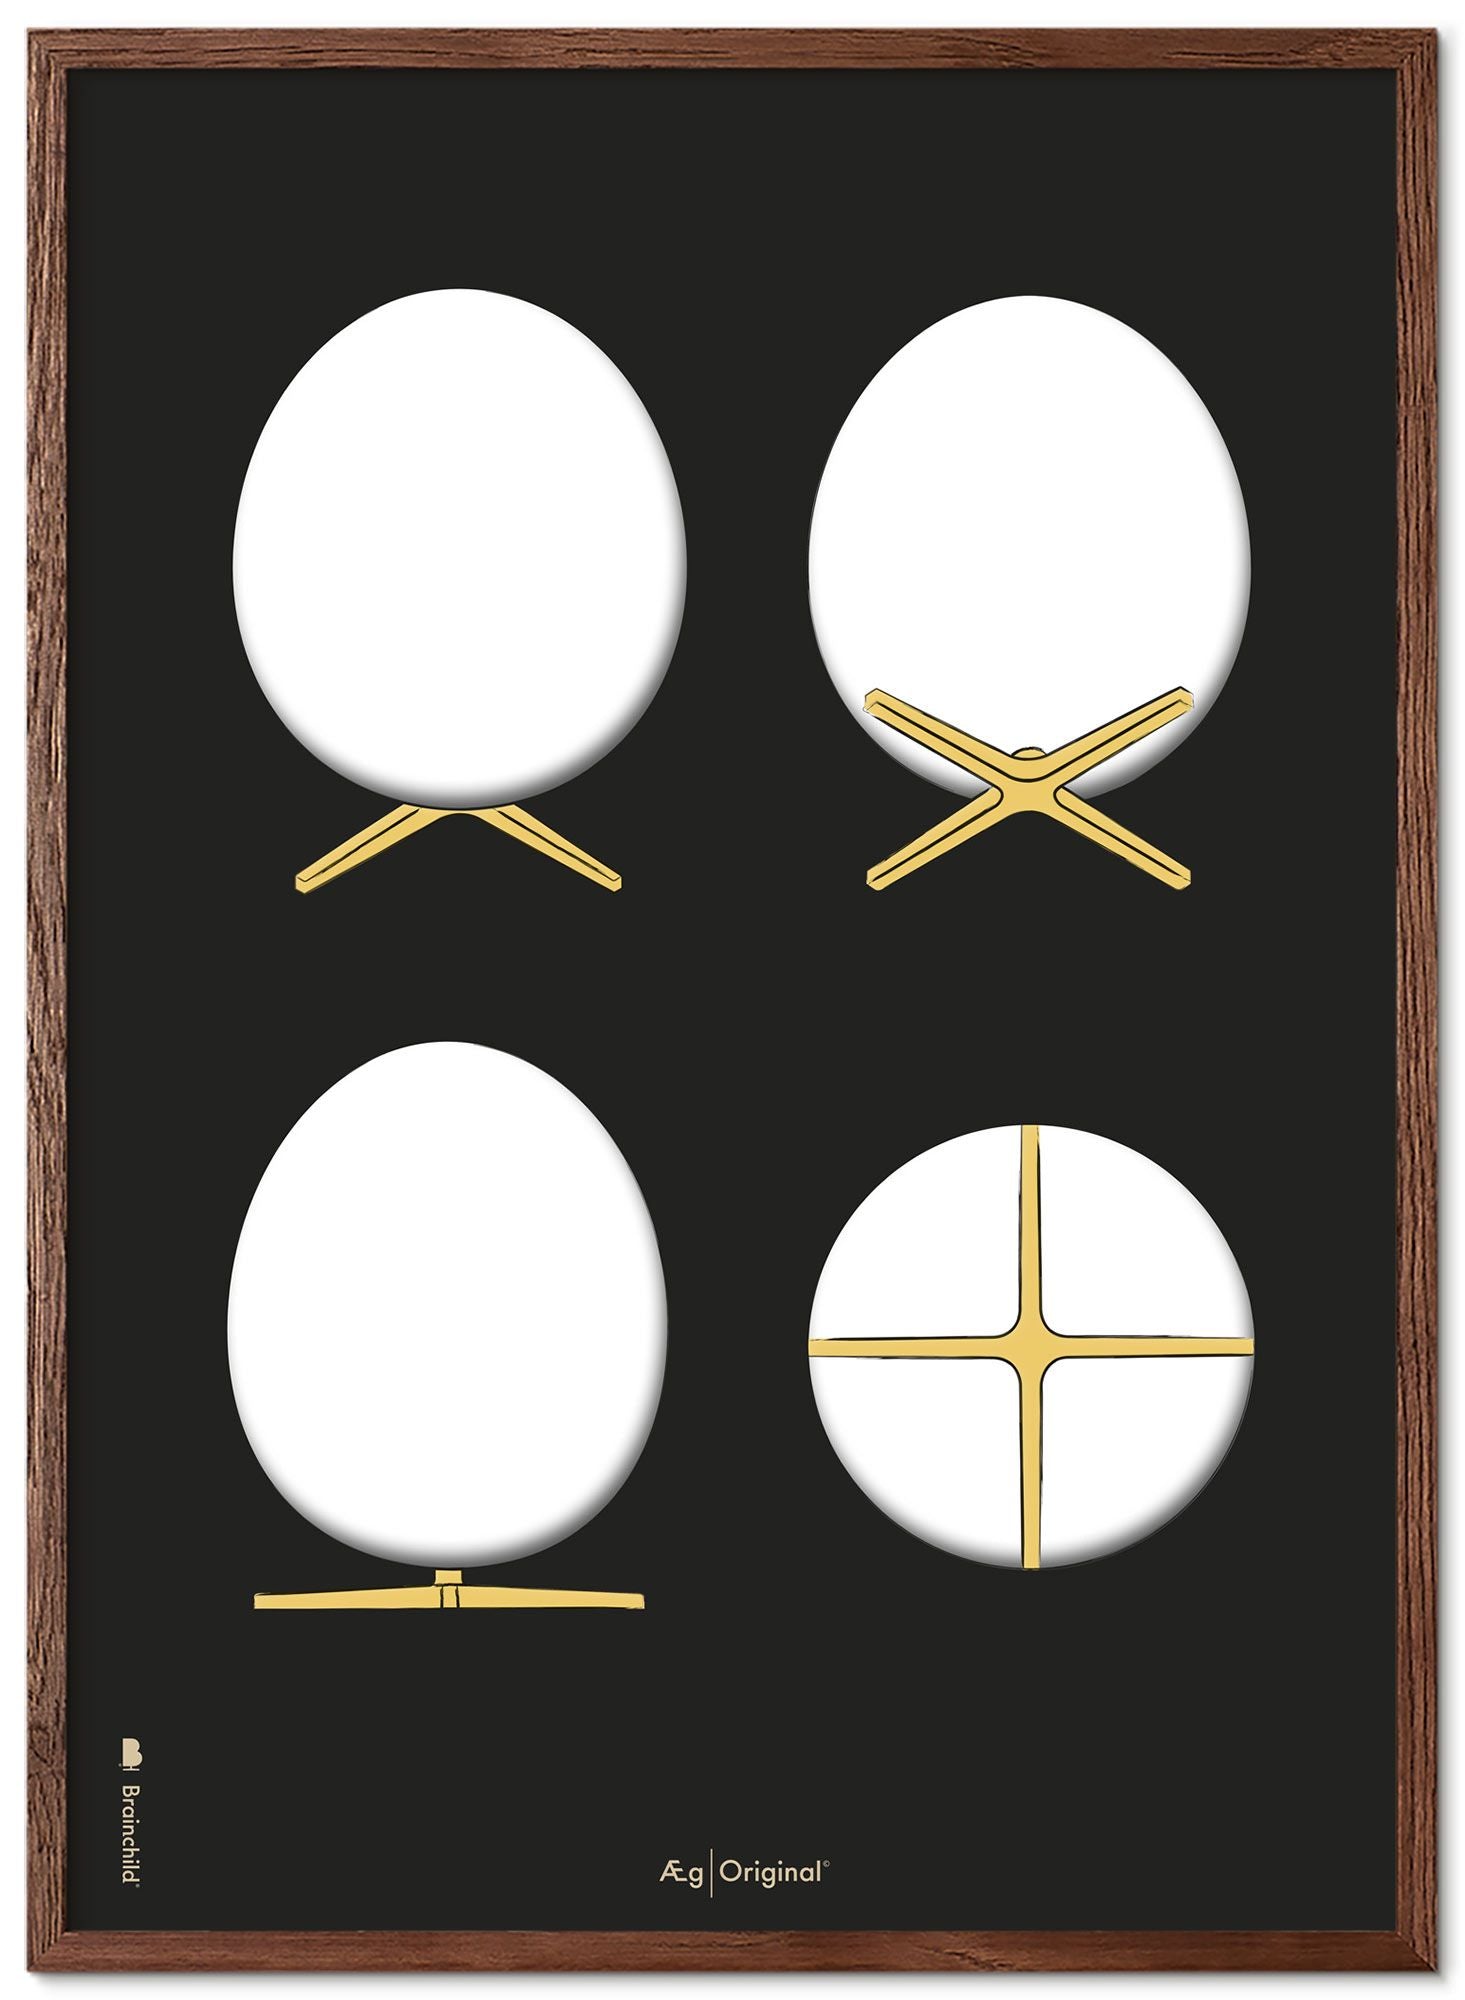 Prepare el marco de póster de bocetos de diseño de huevo hecho de madera oscura de 70x100 cm, fondo negro